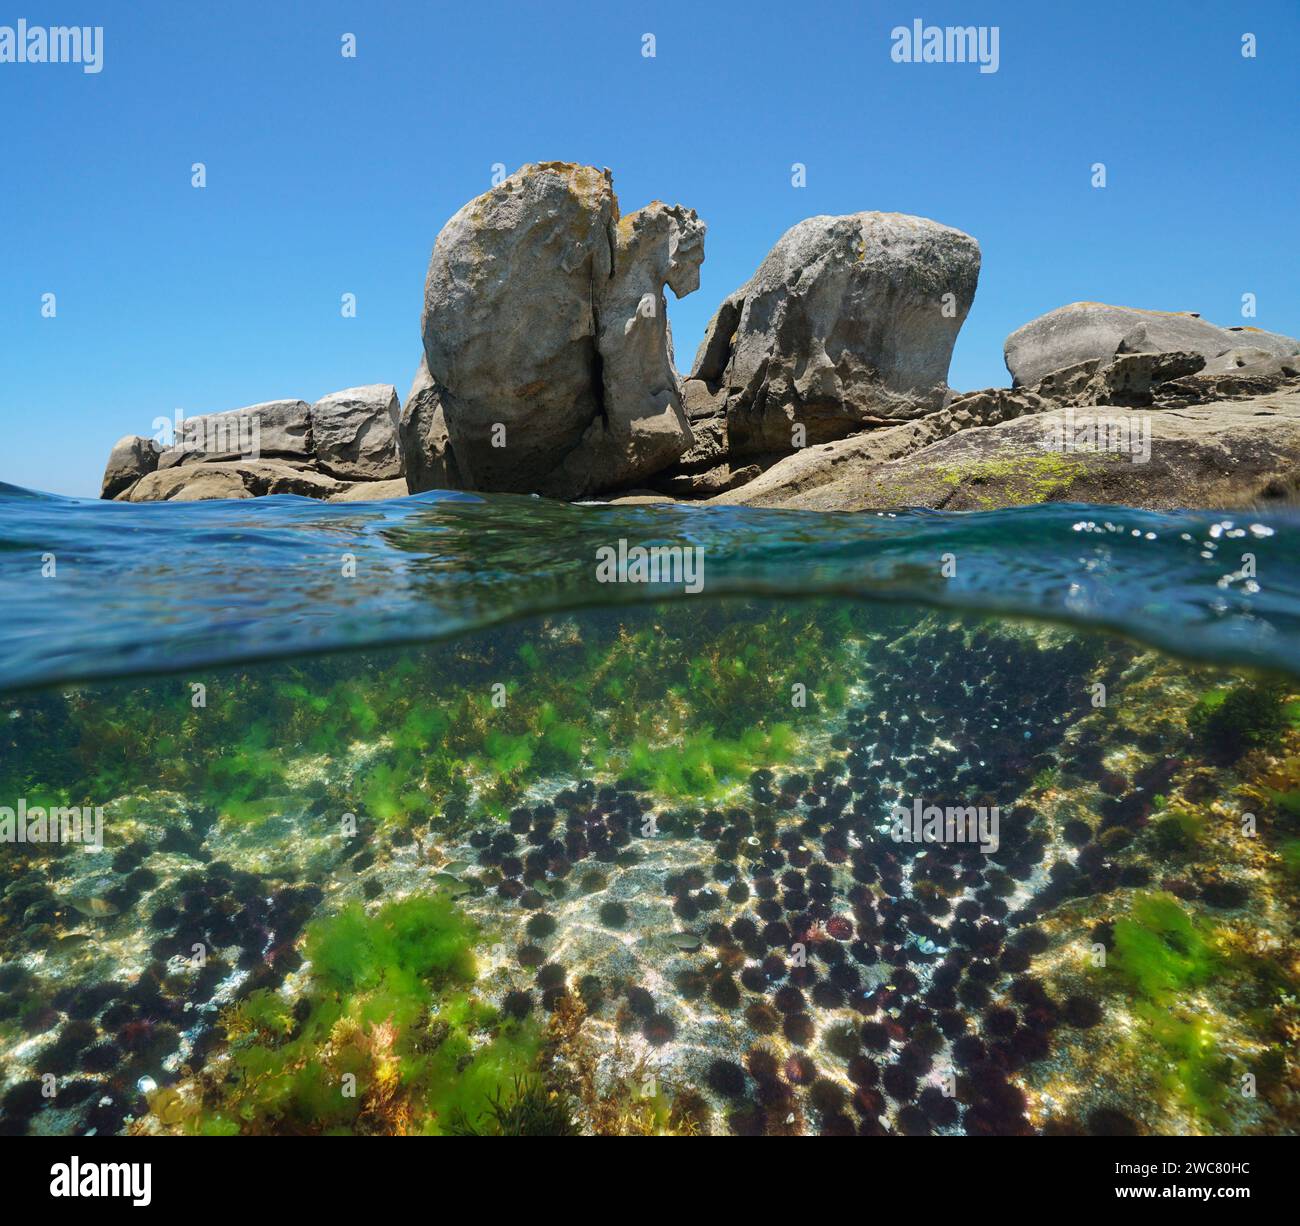 Große Felsen am Meeresufer mit einer Gruppe von Seeigeln unter Wasser, geteilter Blick über und unter der Wasseroberfläche, Ostatlantik, natürliche Szene, Spanien Stockfoto